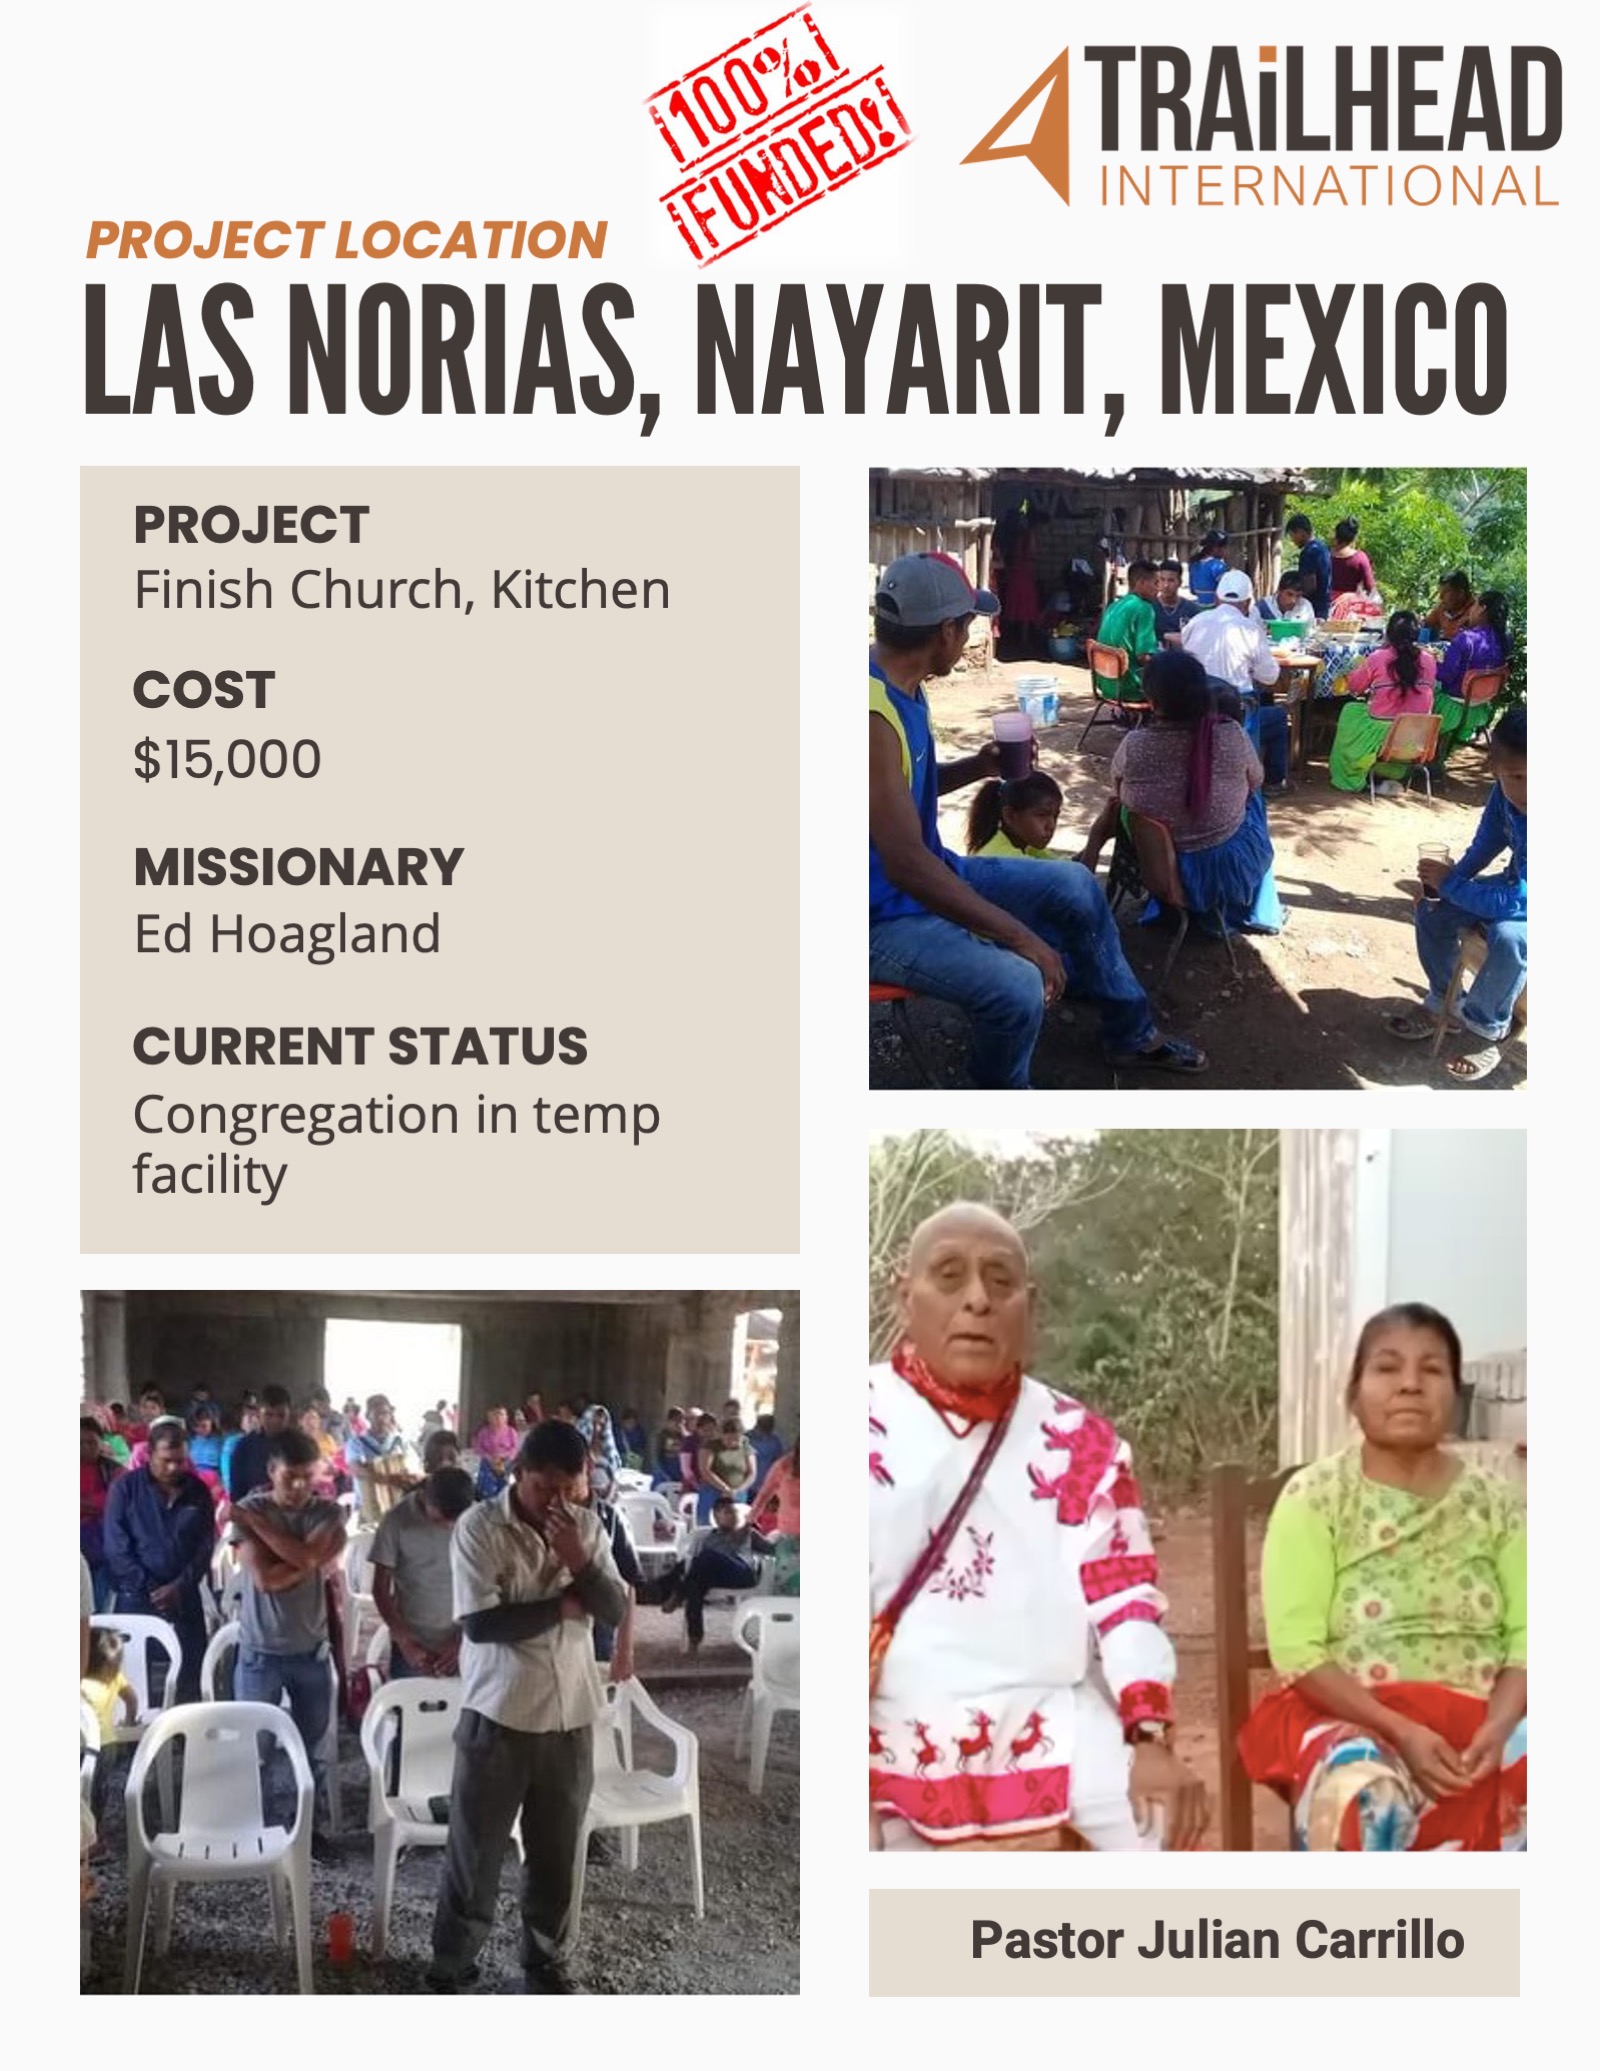 Las Norias, Nayarit, Mexico congregation